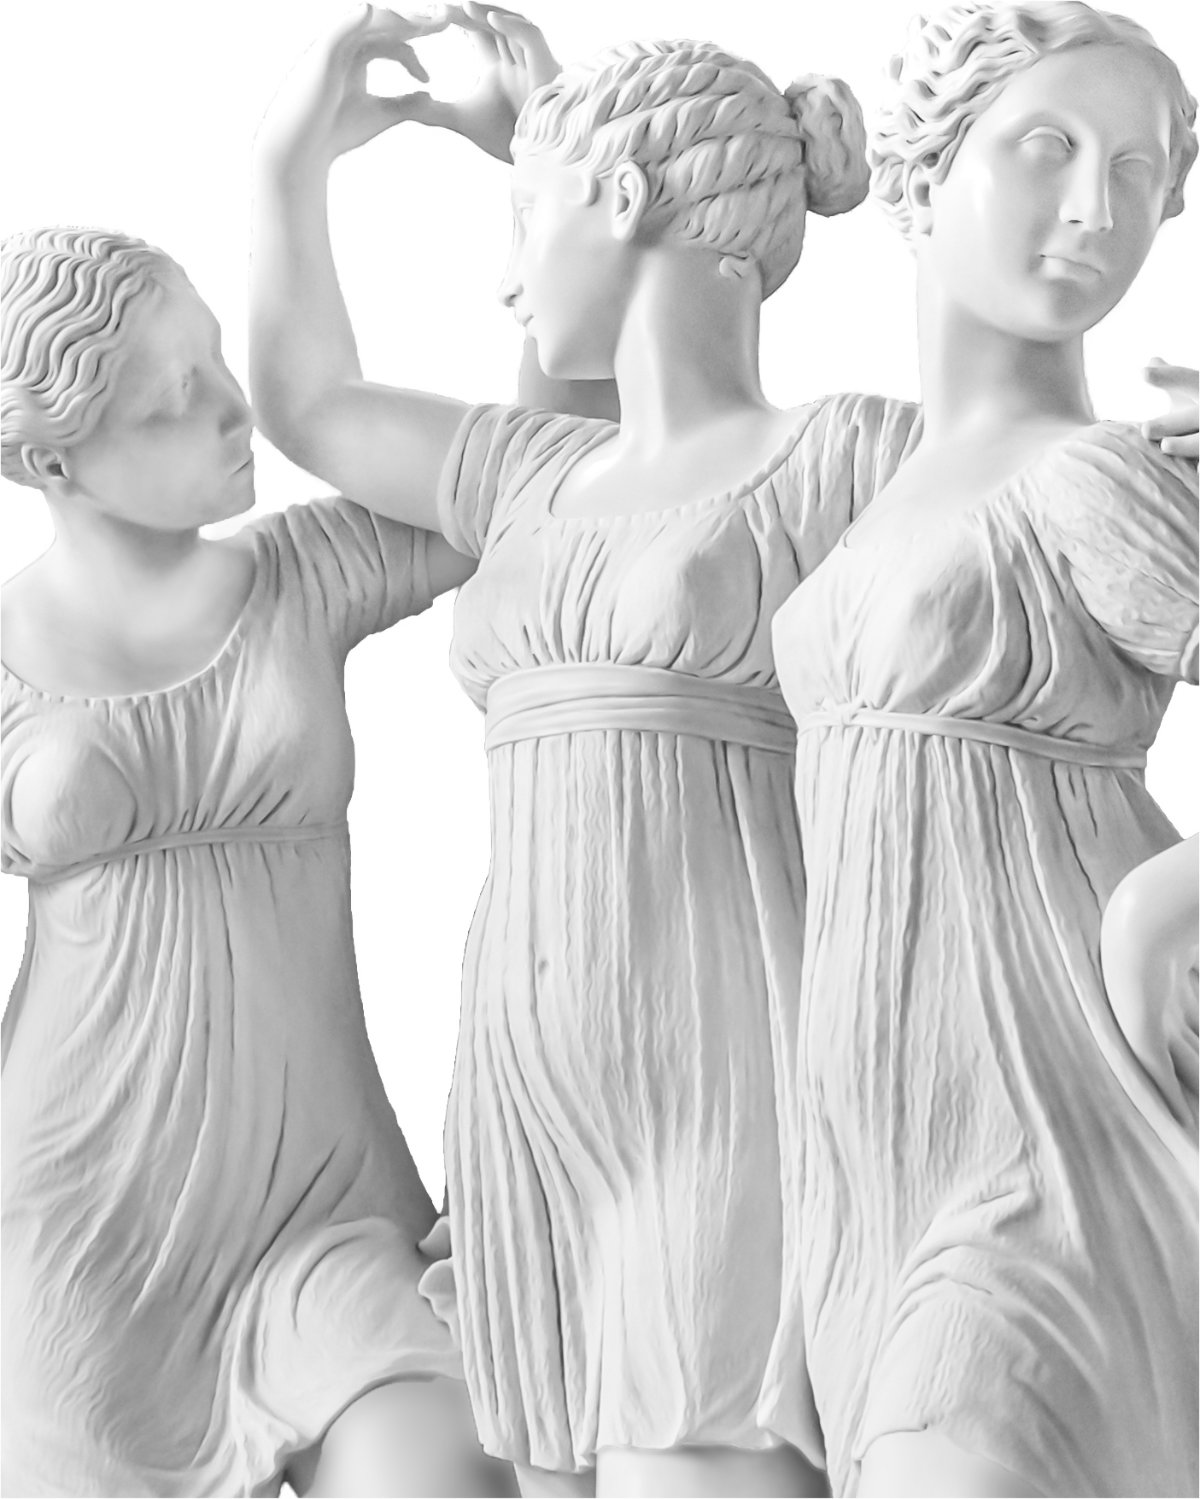 Replica della scultura in marmo "ore danzanti" di carlo finelli realizzata in marmo di carrara scolpito a mano in vendita preso la galleria bazzanti firenze